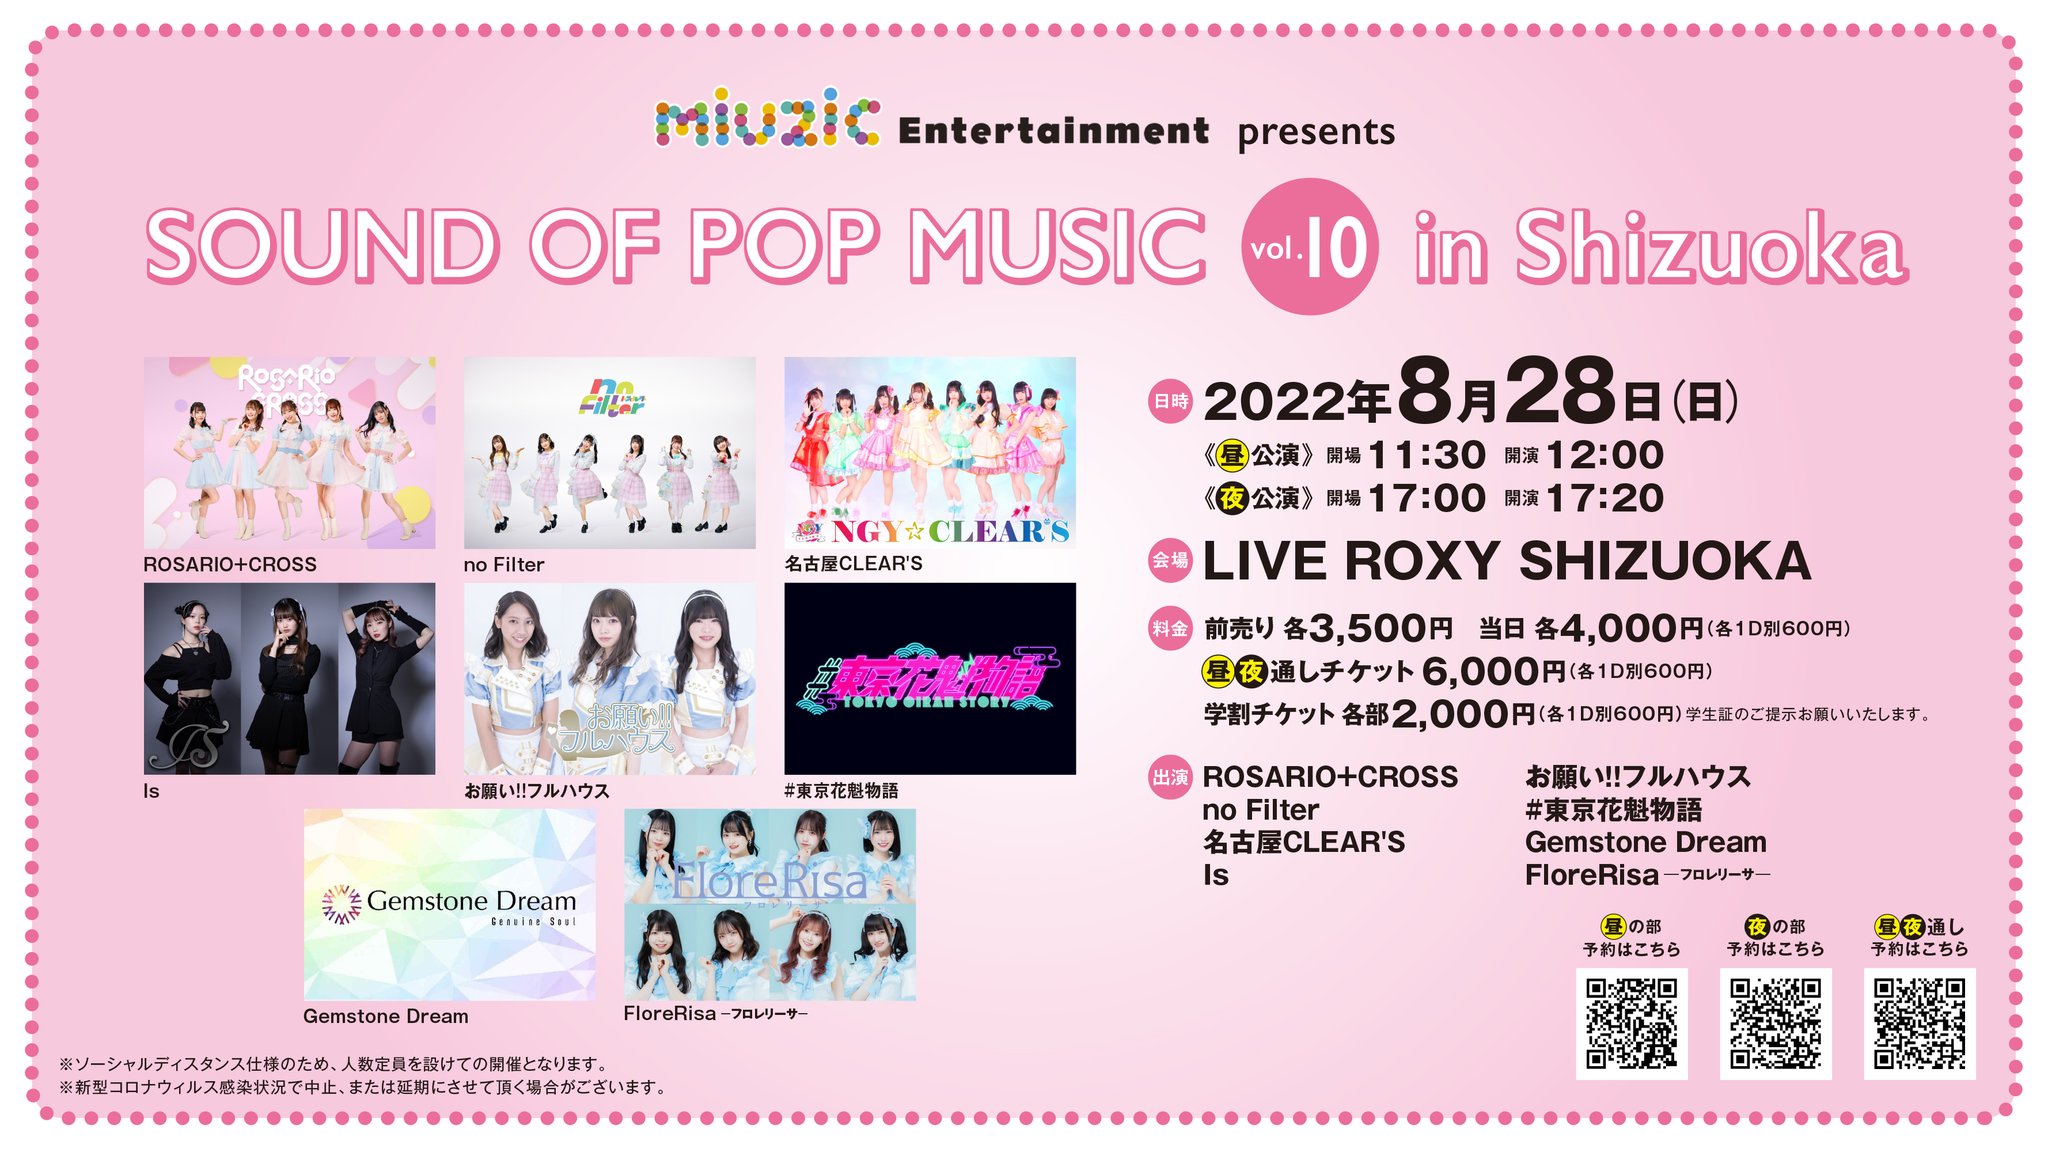 《昼夜通し》8/28(日) miuzic Entertainment presents 「SOUND OF POP MUSIC vol.10 in Shizuoka」